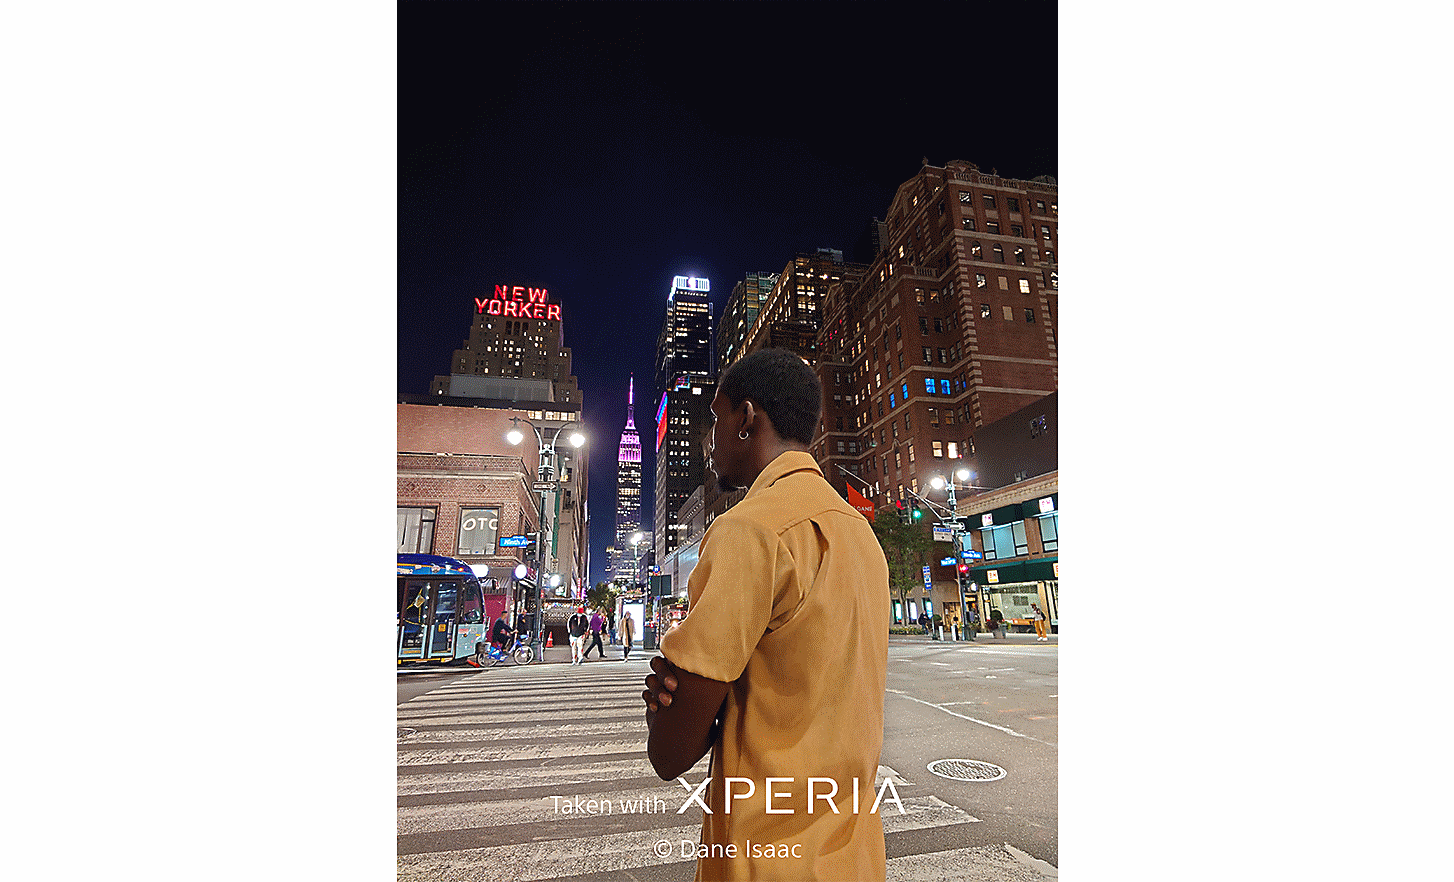 Un homme au premier plan de rues en pleine nuit. Le texte indique : « Photo prise avec un XPERIA © Dane Isaac ».